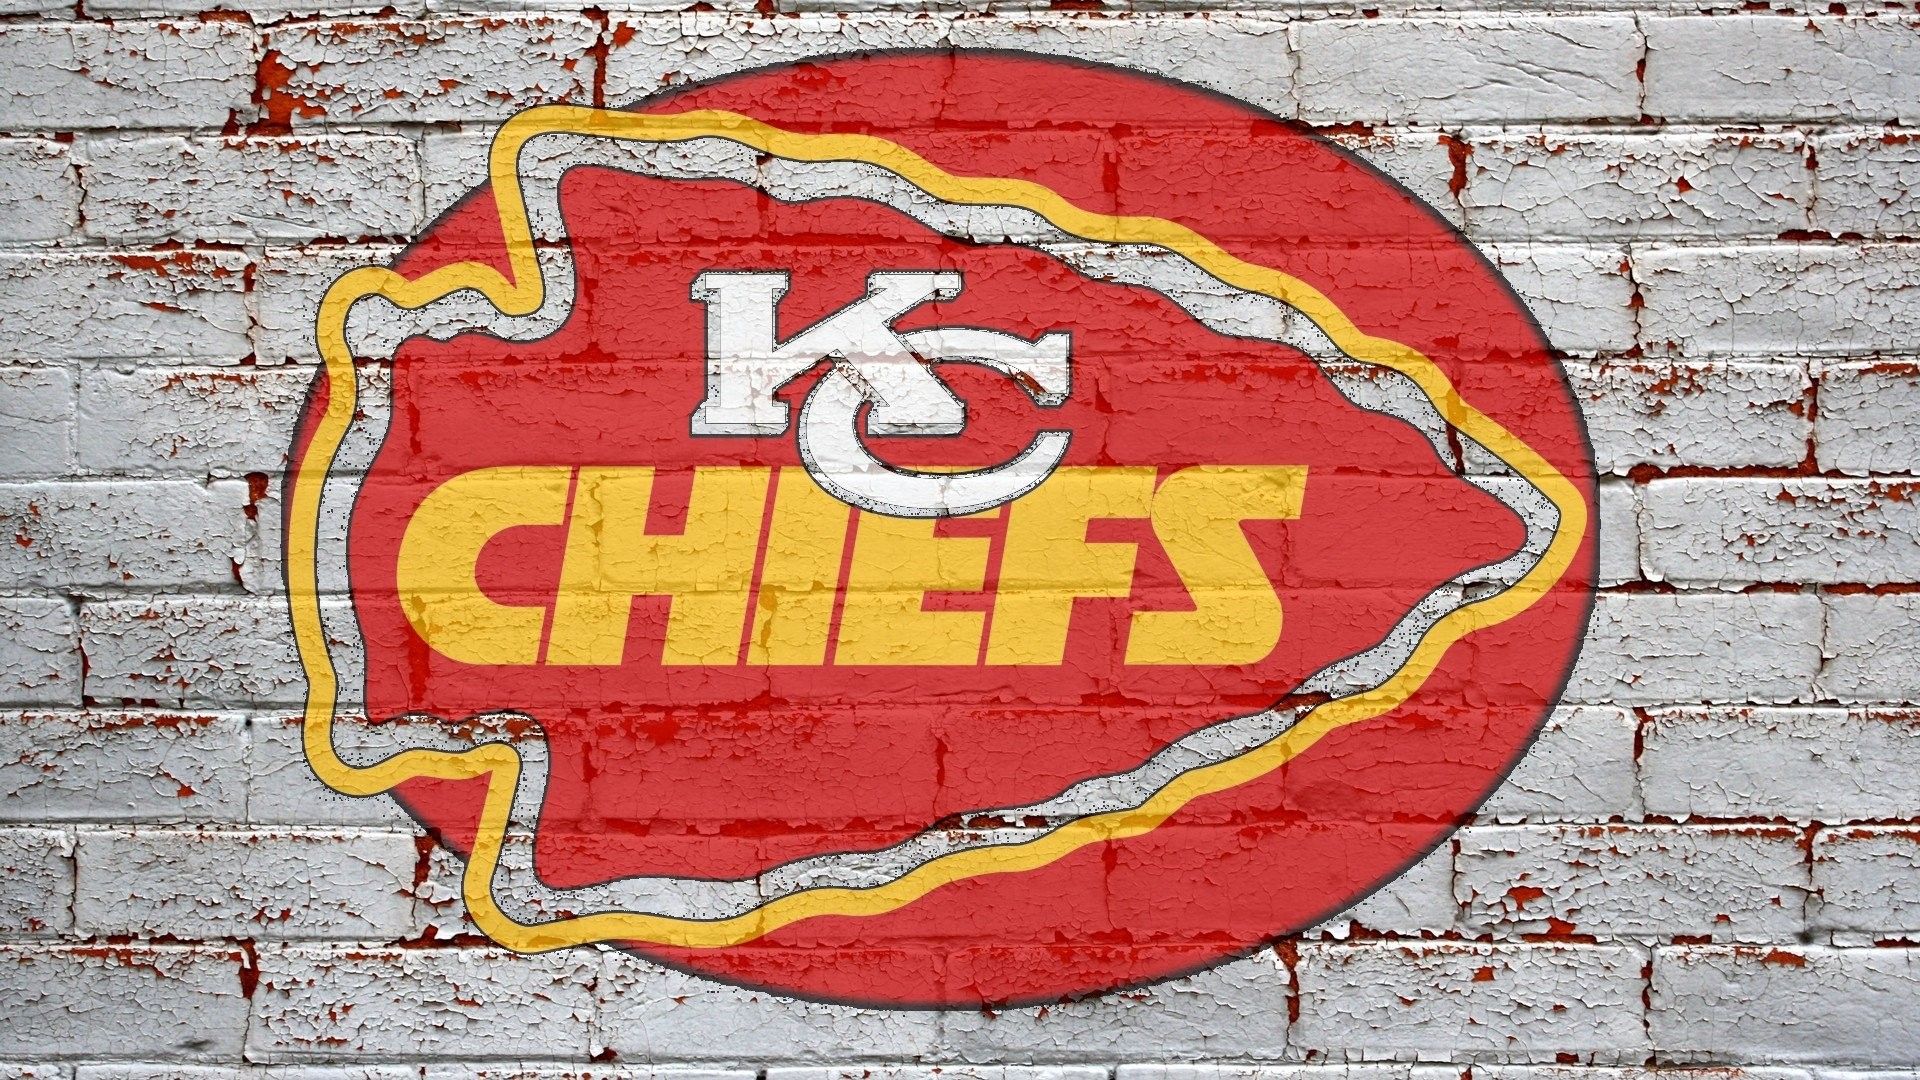 Kansas City Chiefs NFL Wallpaper For Mac Background NFL Football Wallpaper. Chiefs wallpaper, Kansas city chiefs logo, Kansas city chiefs